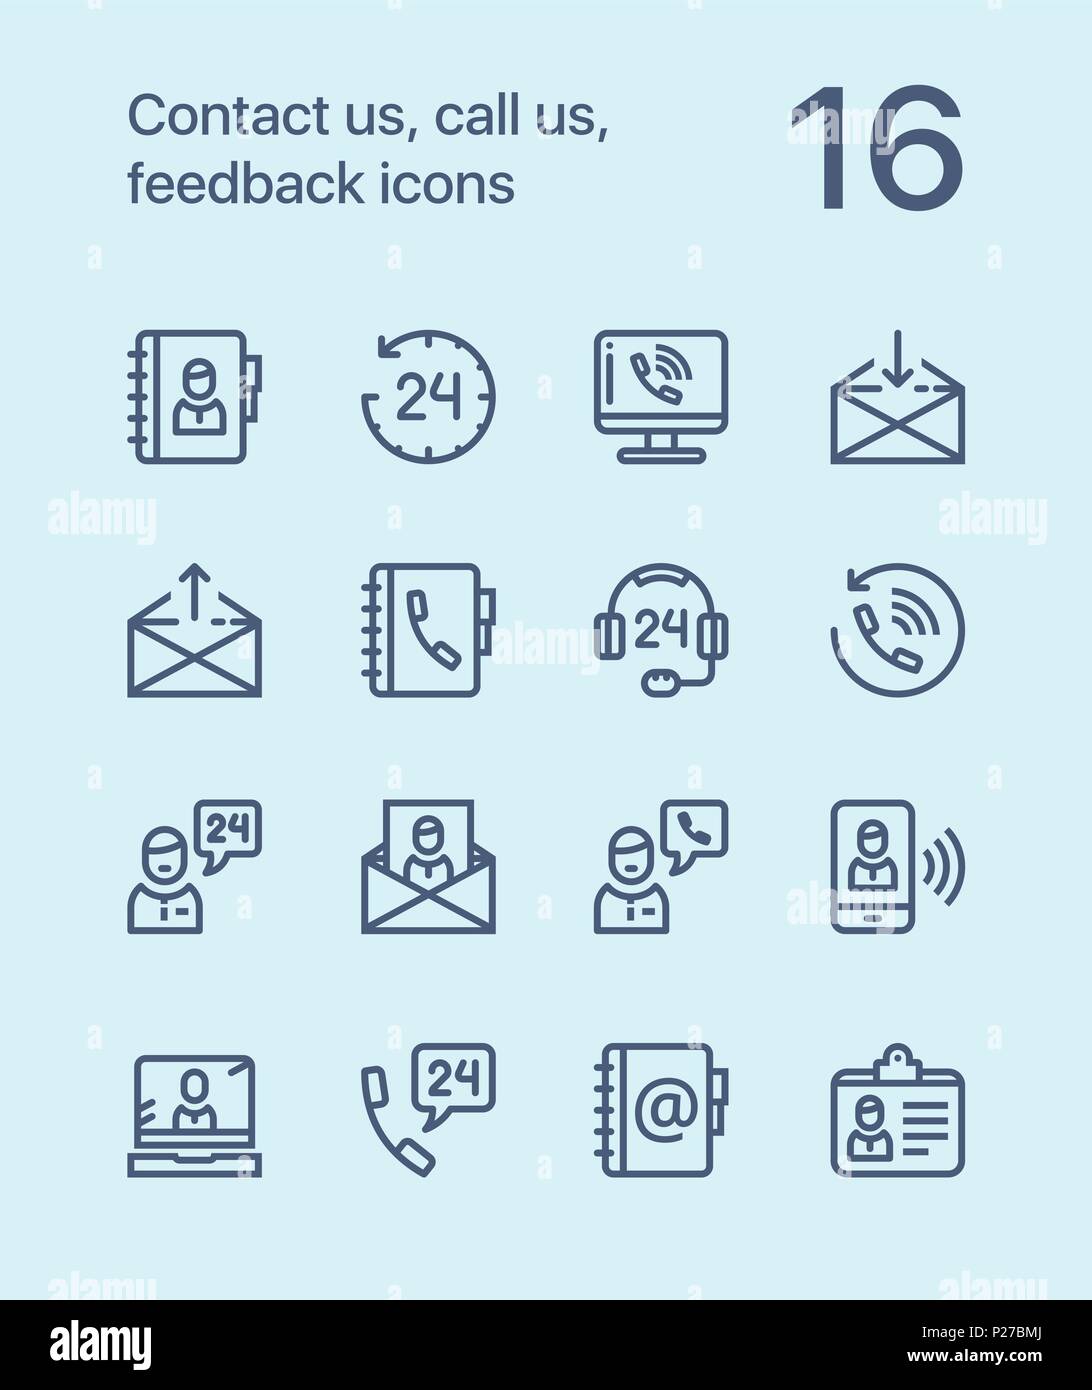 Profilo Contattaci, ci chiama, icone di feedback per il web e i dispositivi mobili pack 1 Illustrazione Vettoriale